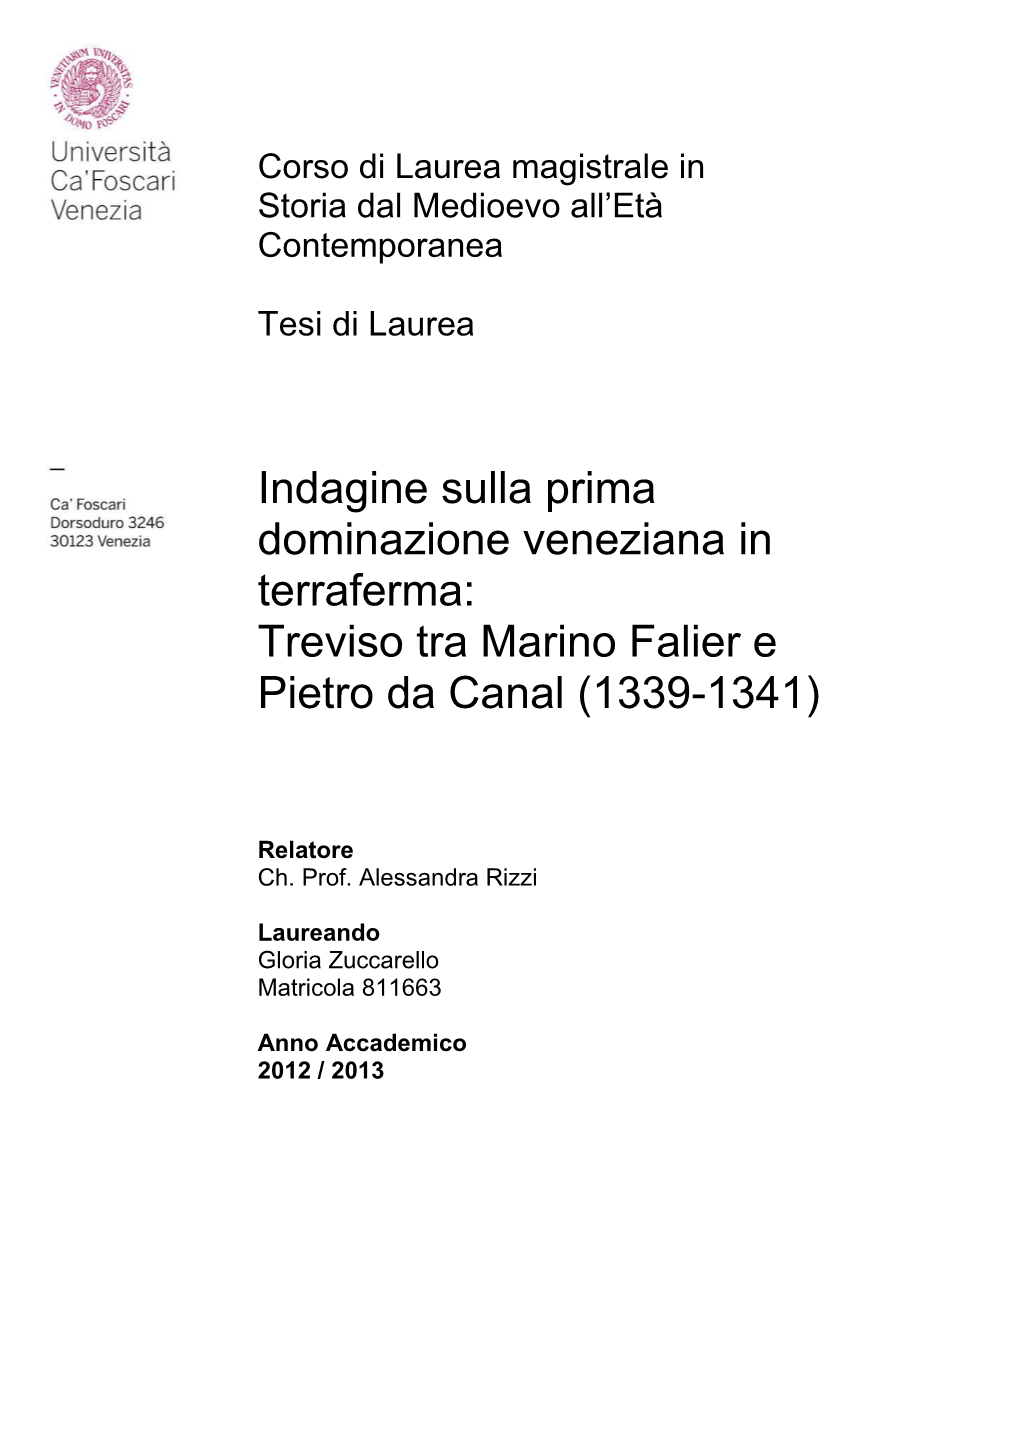 Indagine Sulla Prima Dominazione Veneziana in Terraferma: Treviso Tra Marino Falier E Pietro Da Canal (1339-1341)